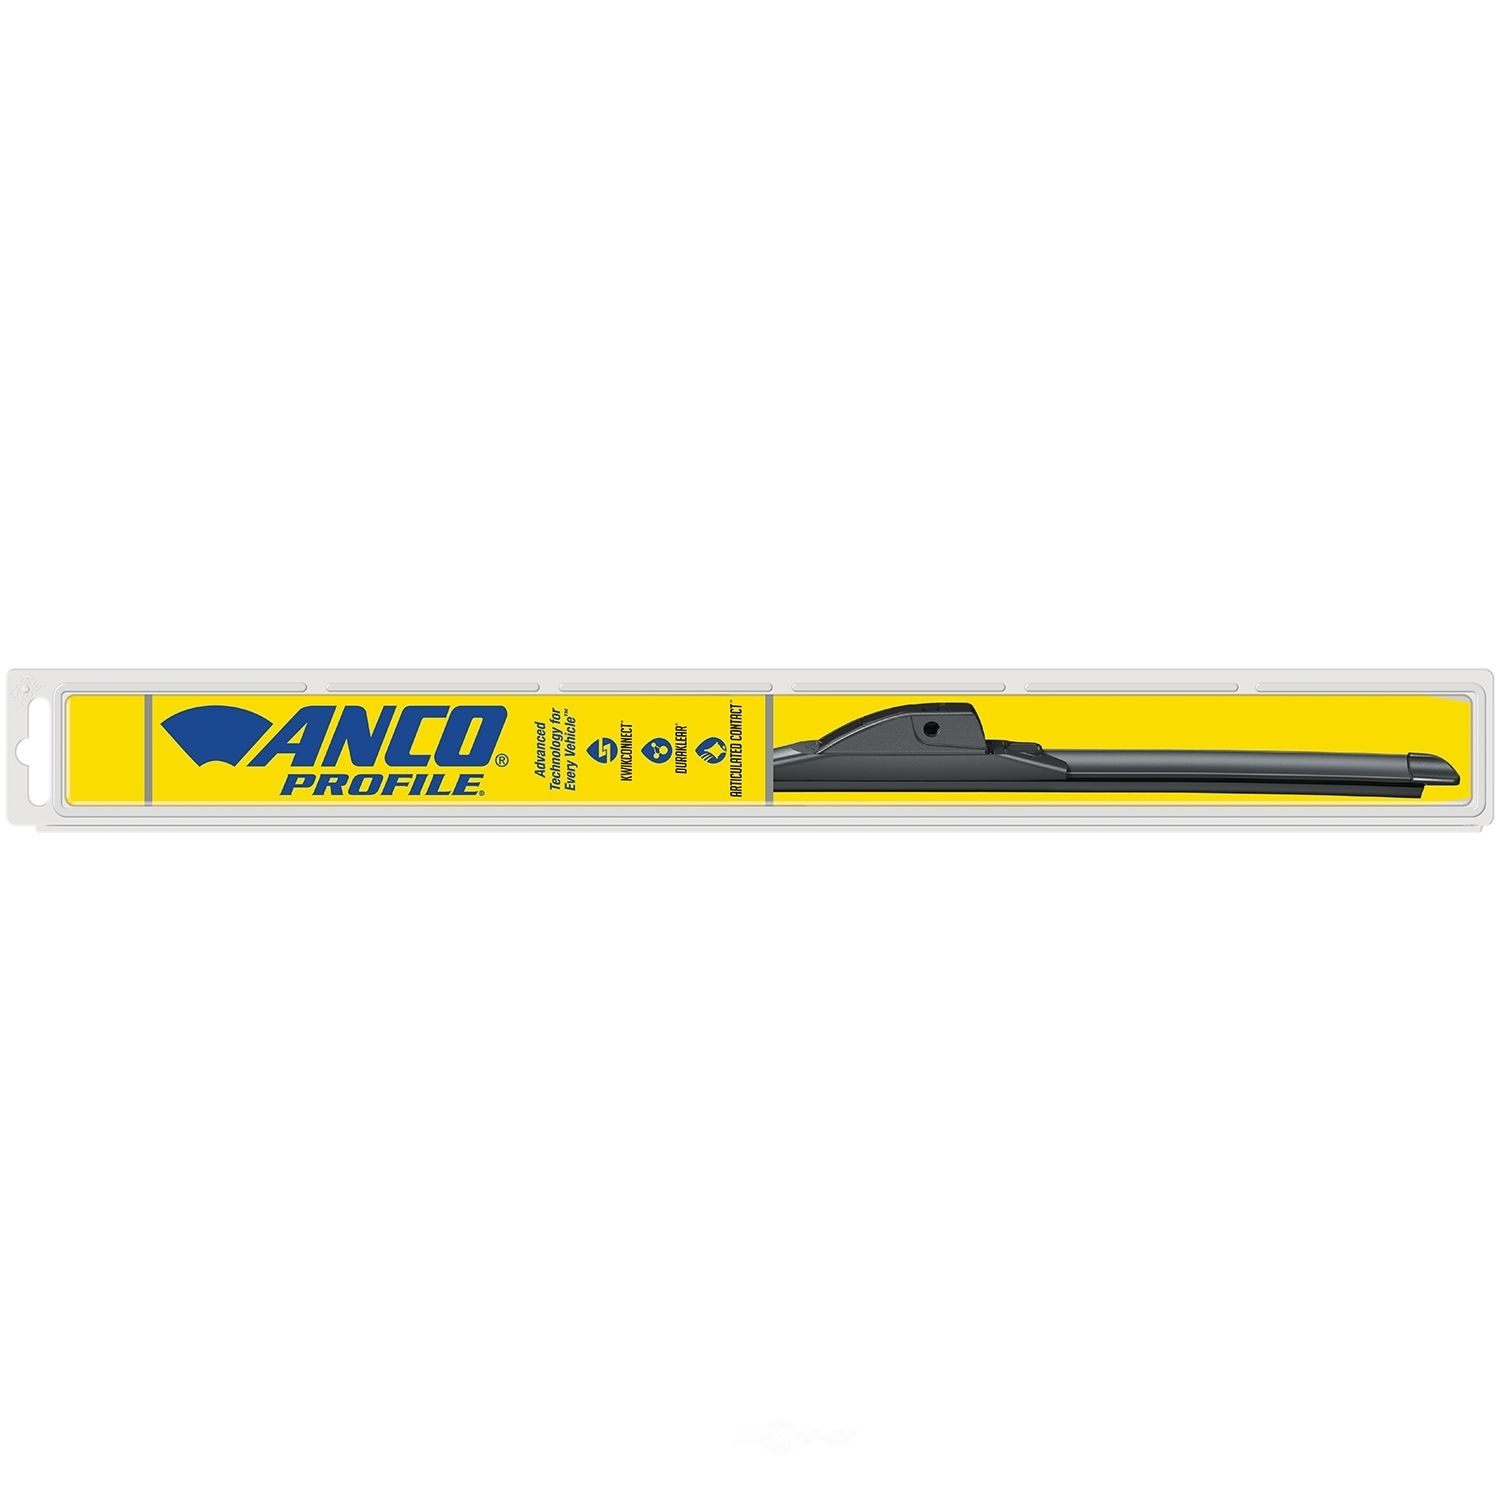 ANCO WIPER PRODUCTS - Profile Wiper Blade - ANC A-16-M